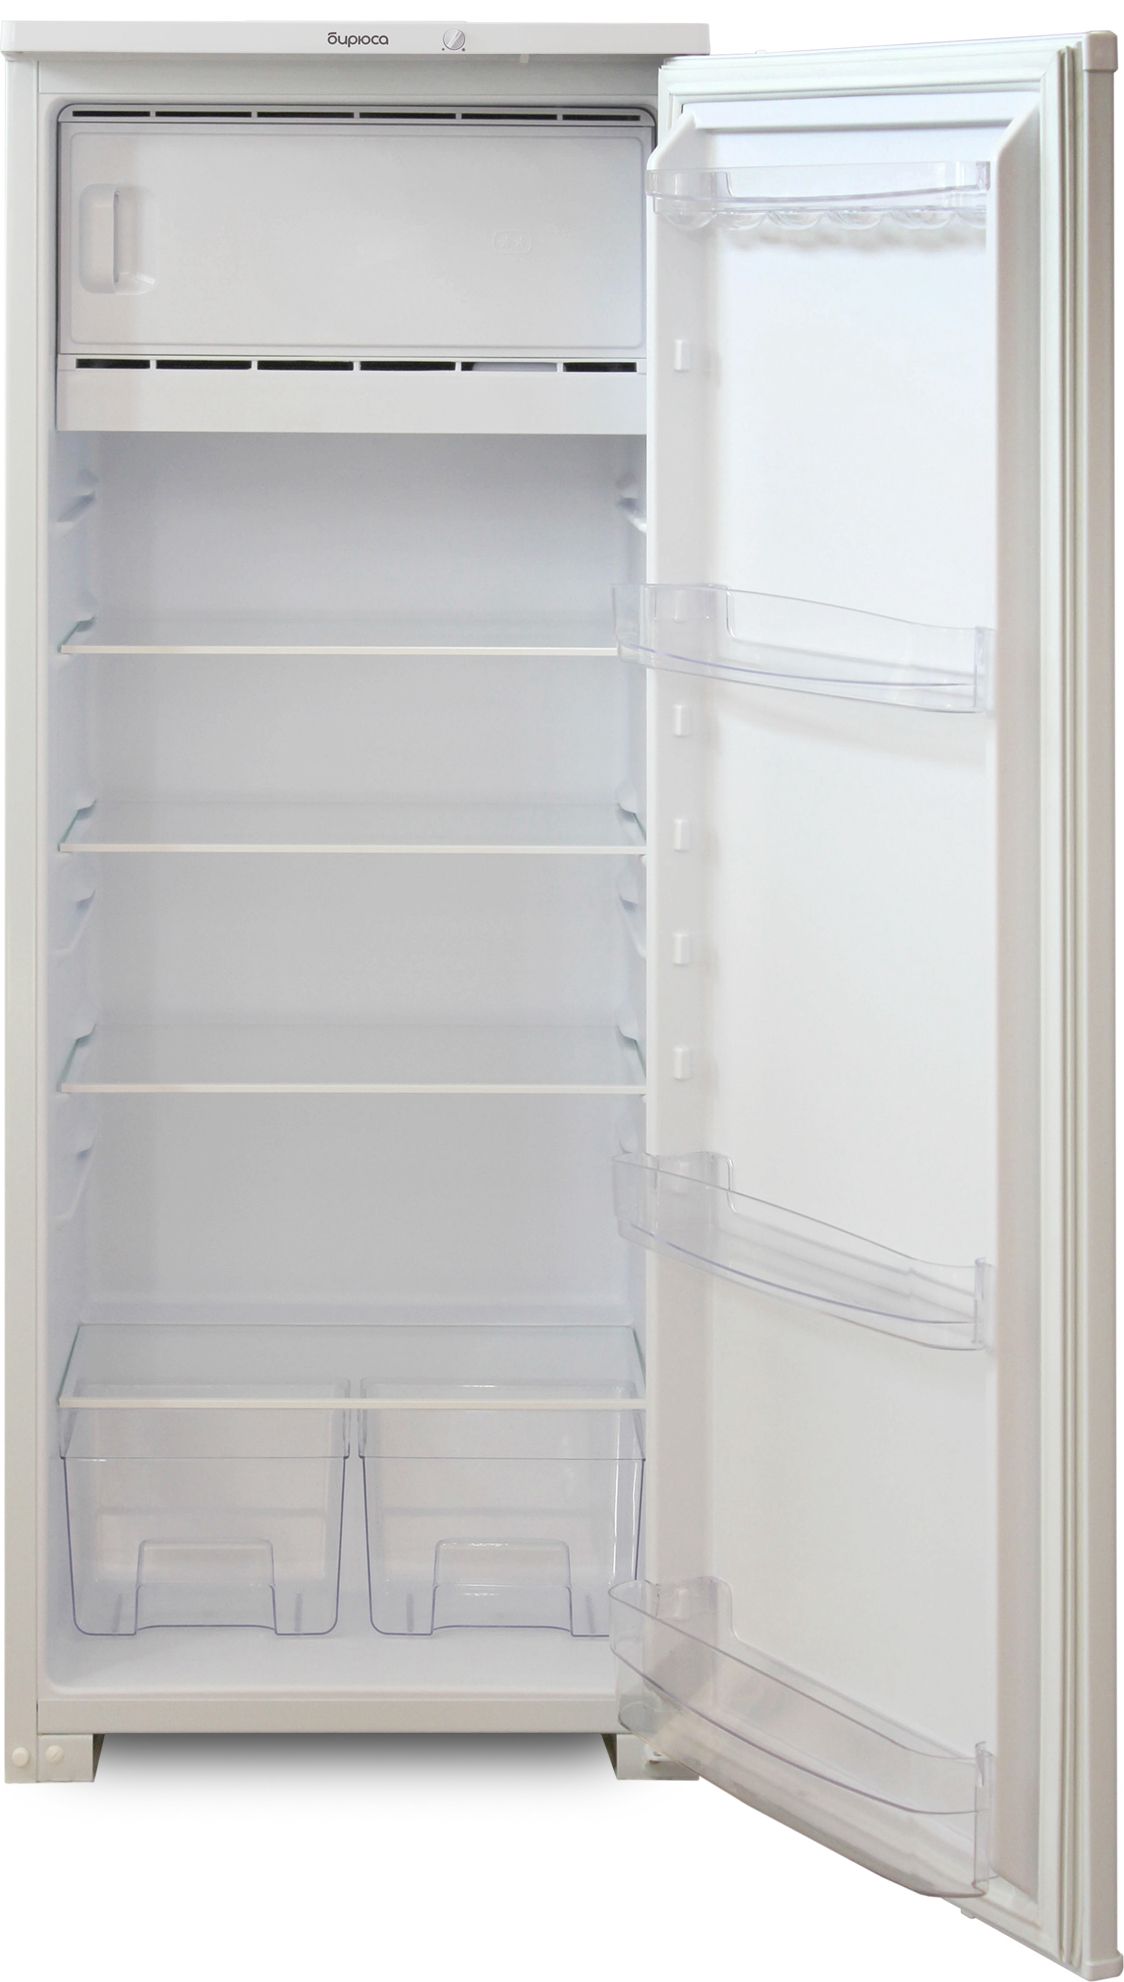 холодильник бирюса 6, купить в Красноярске холодильник бирюса 6,  купить в Красноярске дешево холодильник бирюса 6, купить в Красноярске минимальной цене холодильник бирюса 6